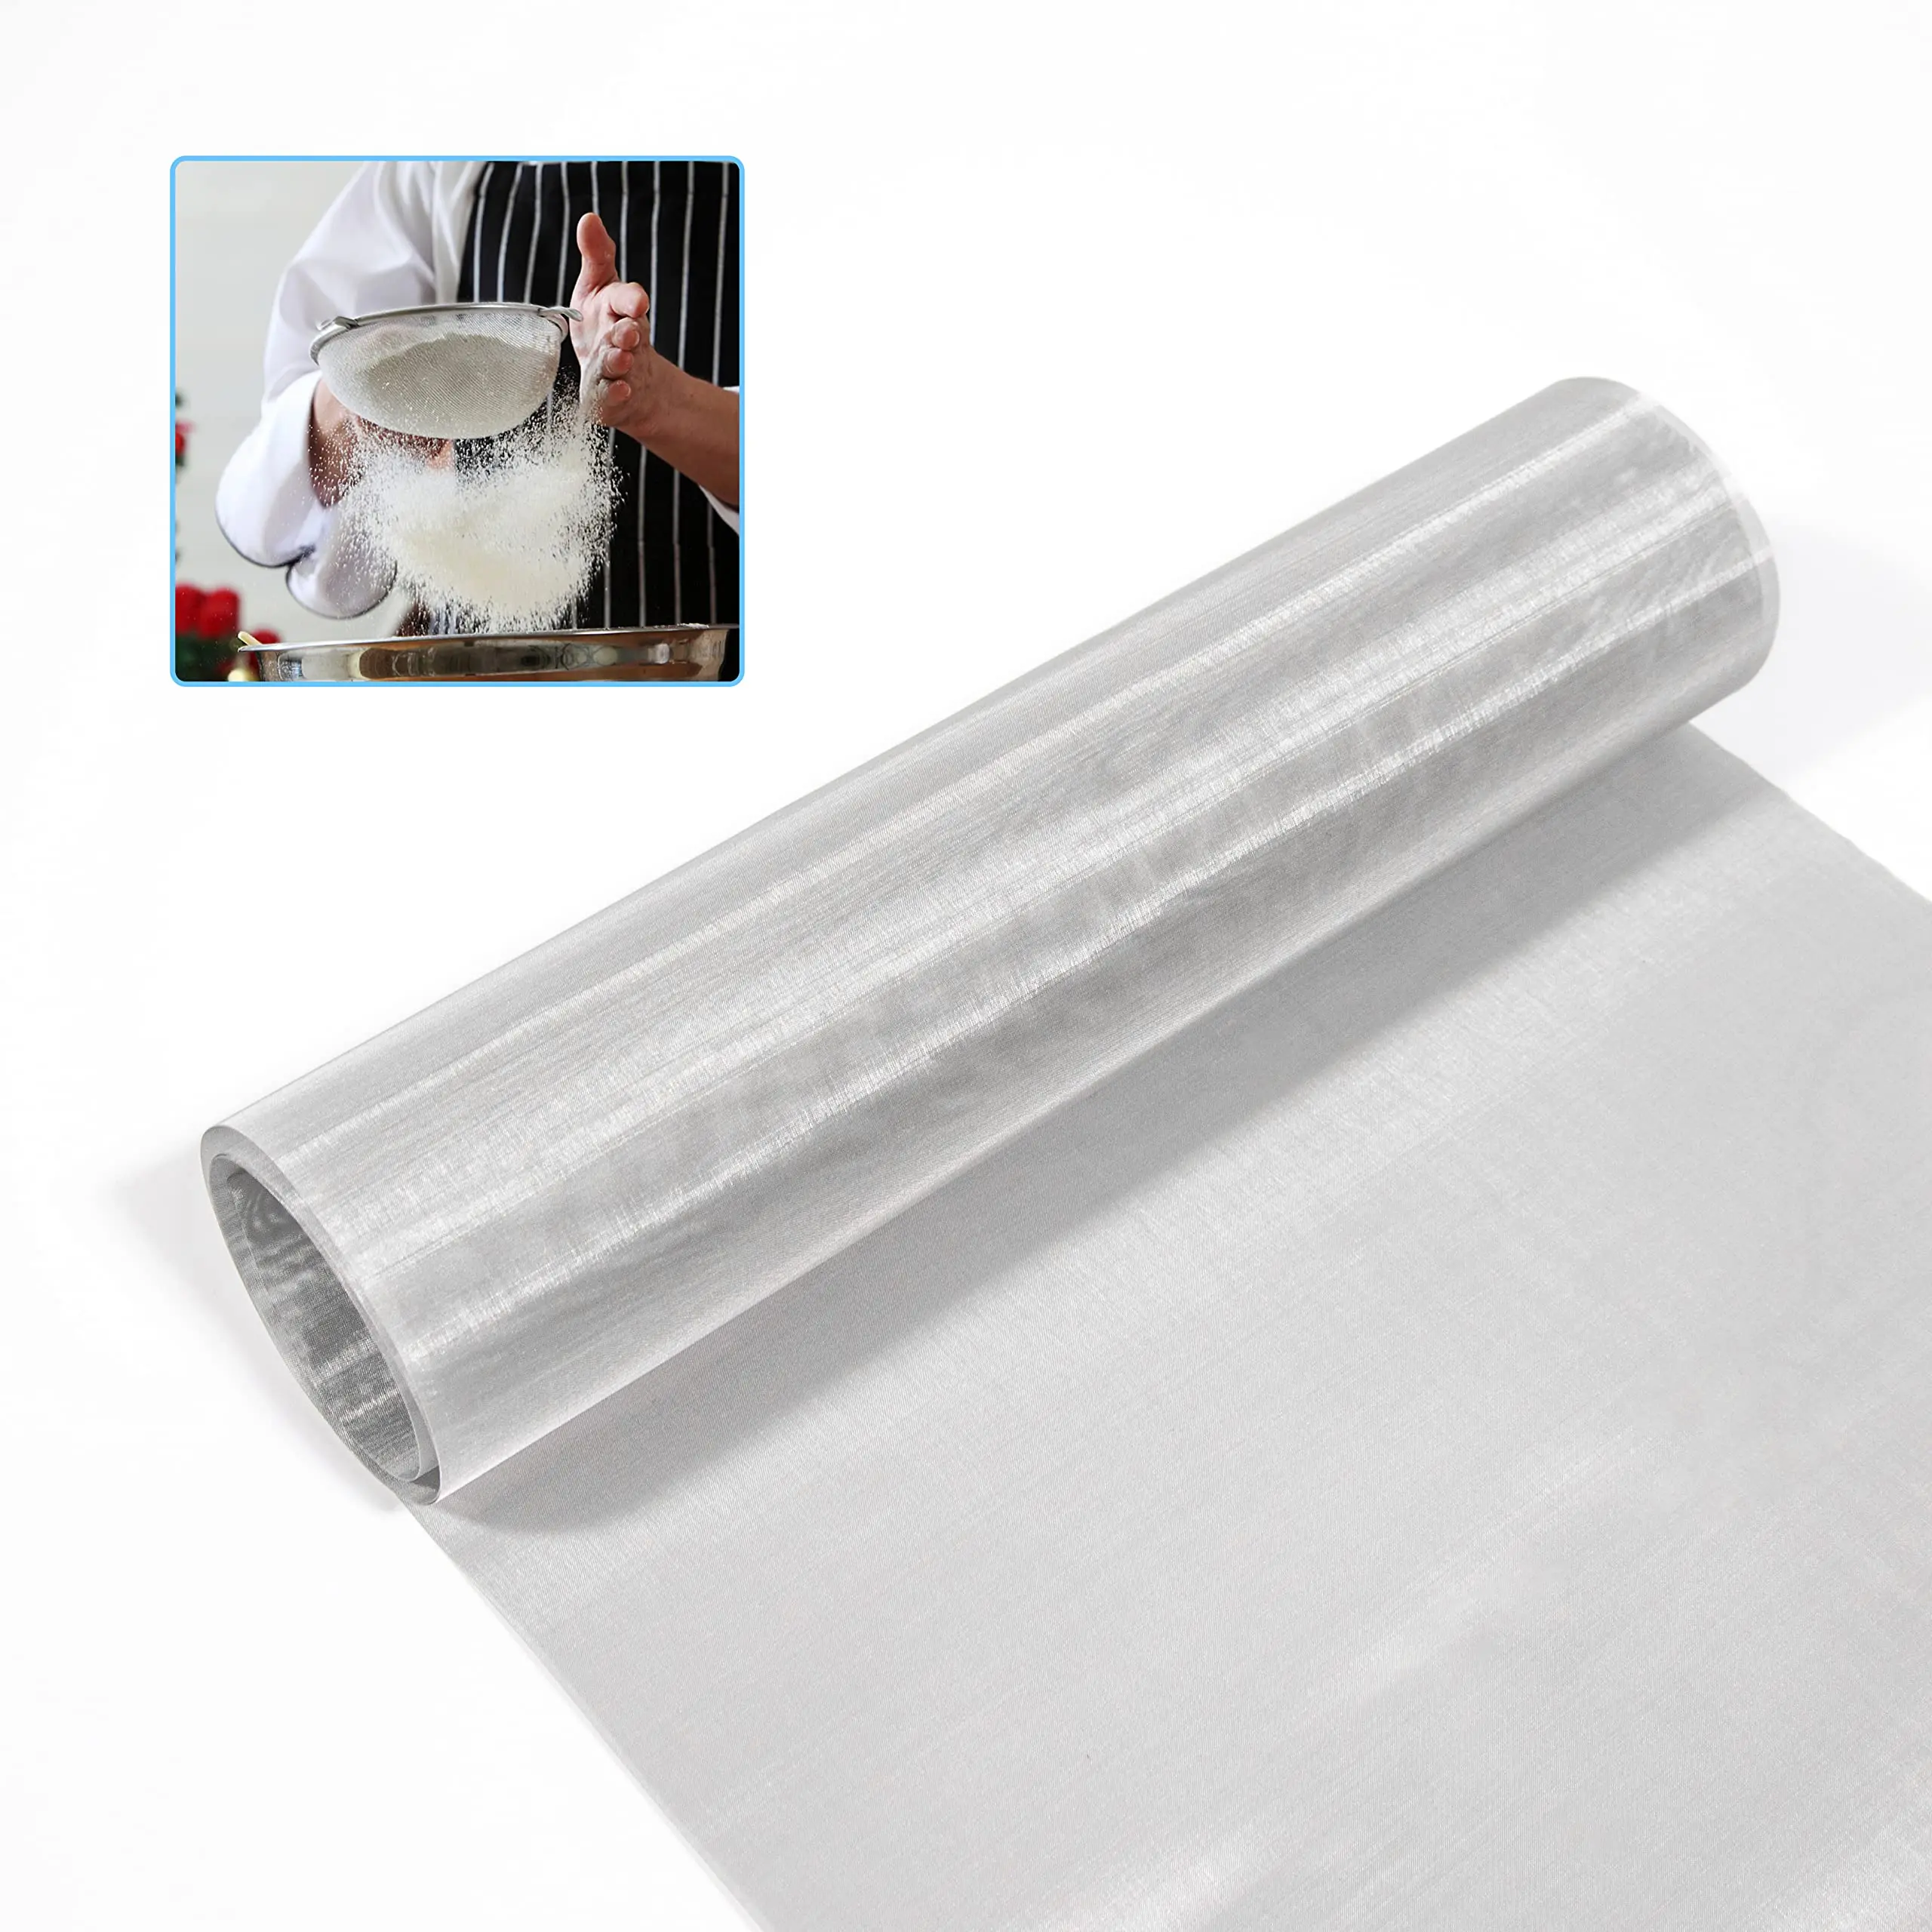 alambre tejido con laminas de plastico - Cuántos metros tiene el rollo de alambre tejido